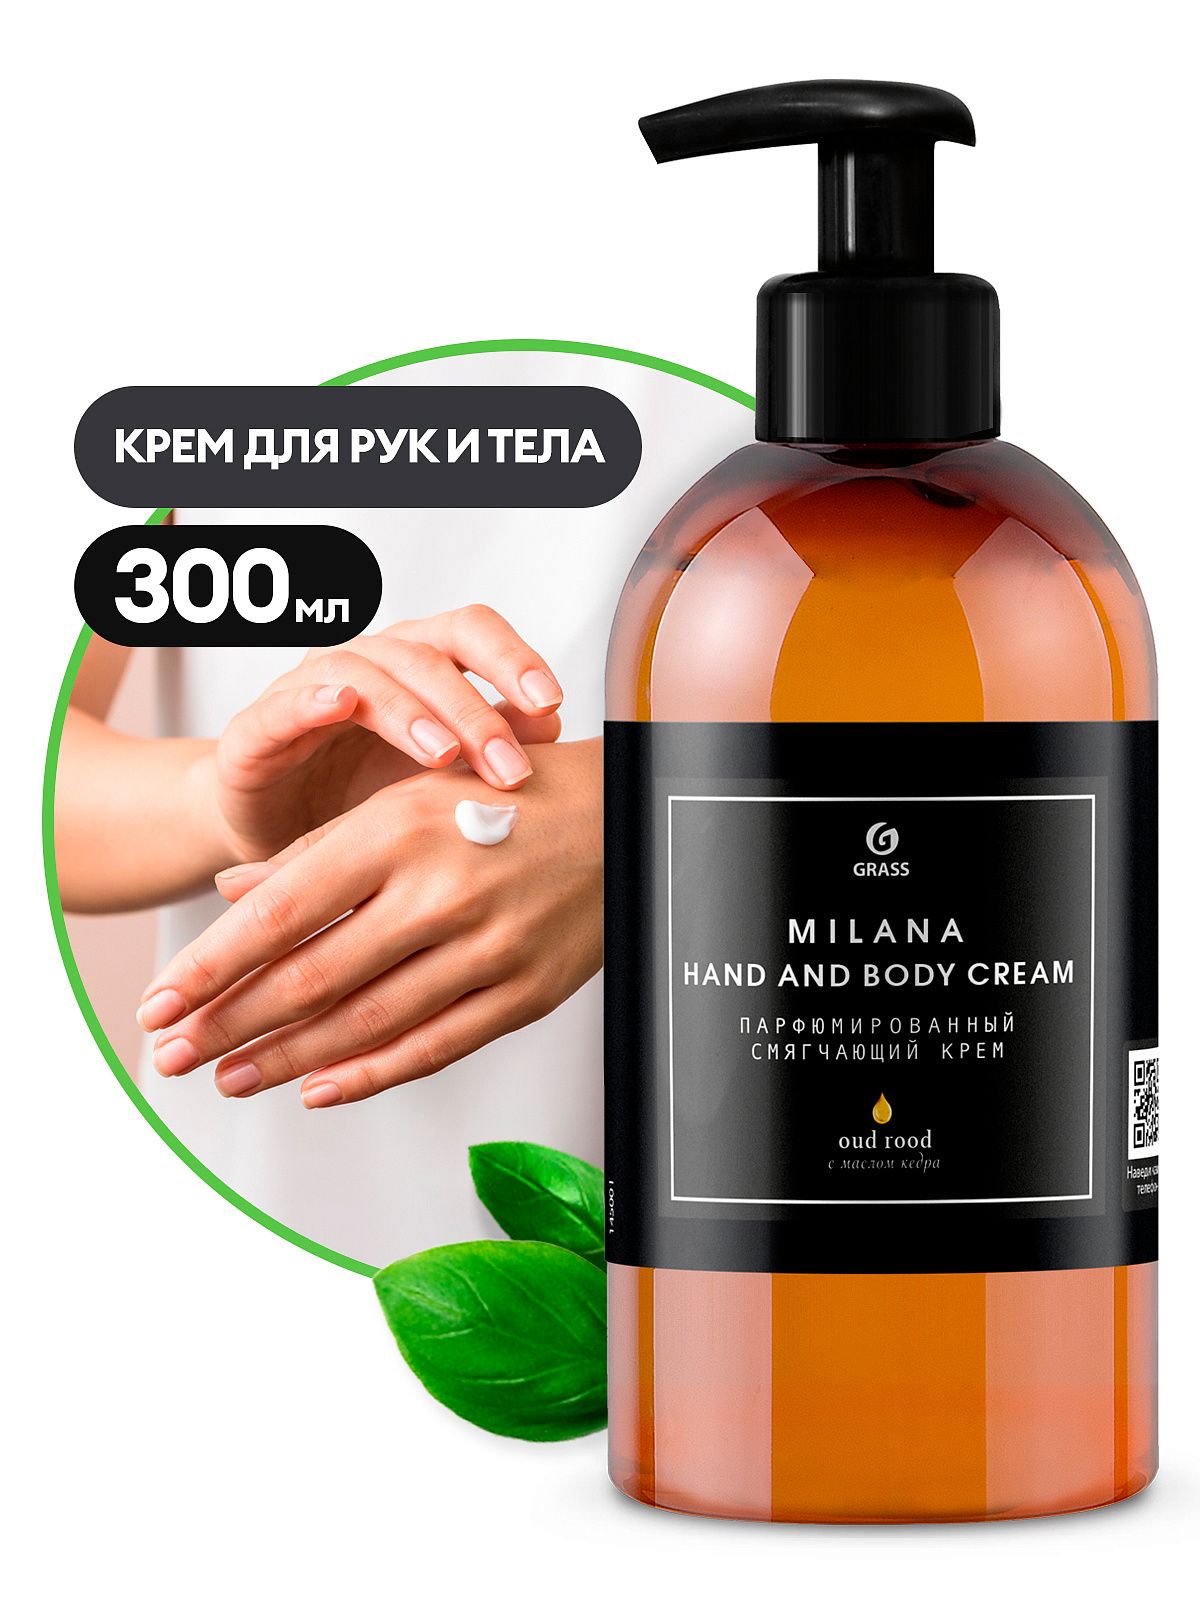 Крем парфюмированный смягчающий Milana  fhand and body Cream OUD ROOD (300 мл)GRASS